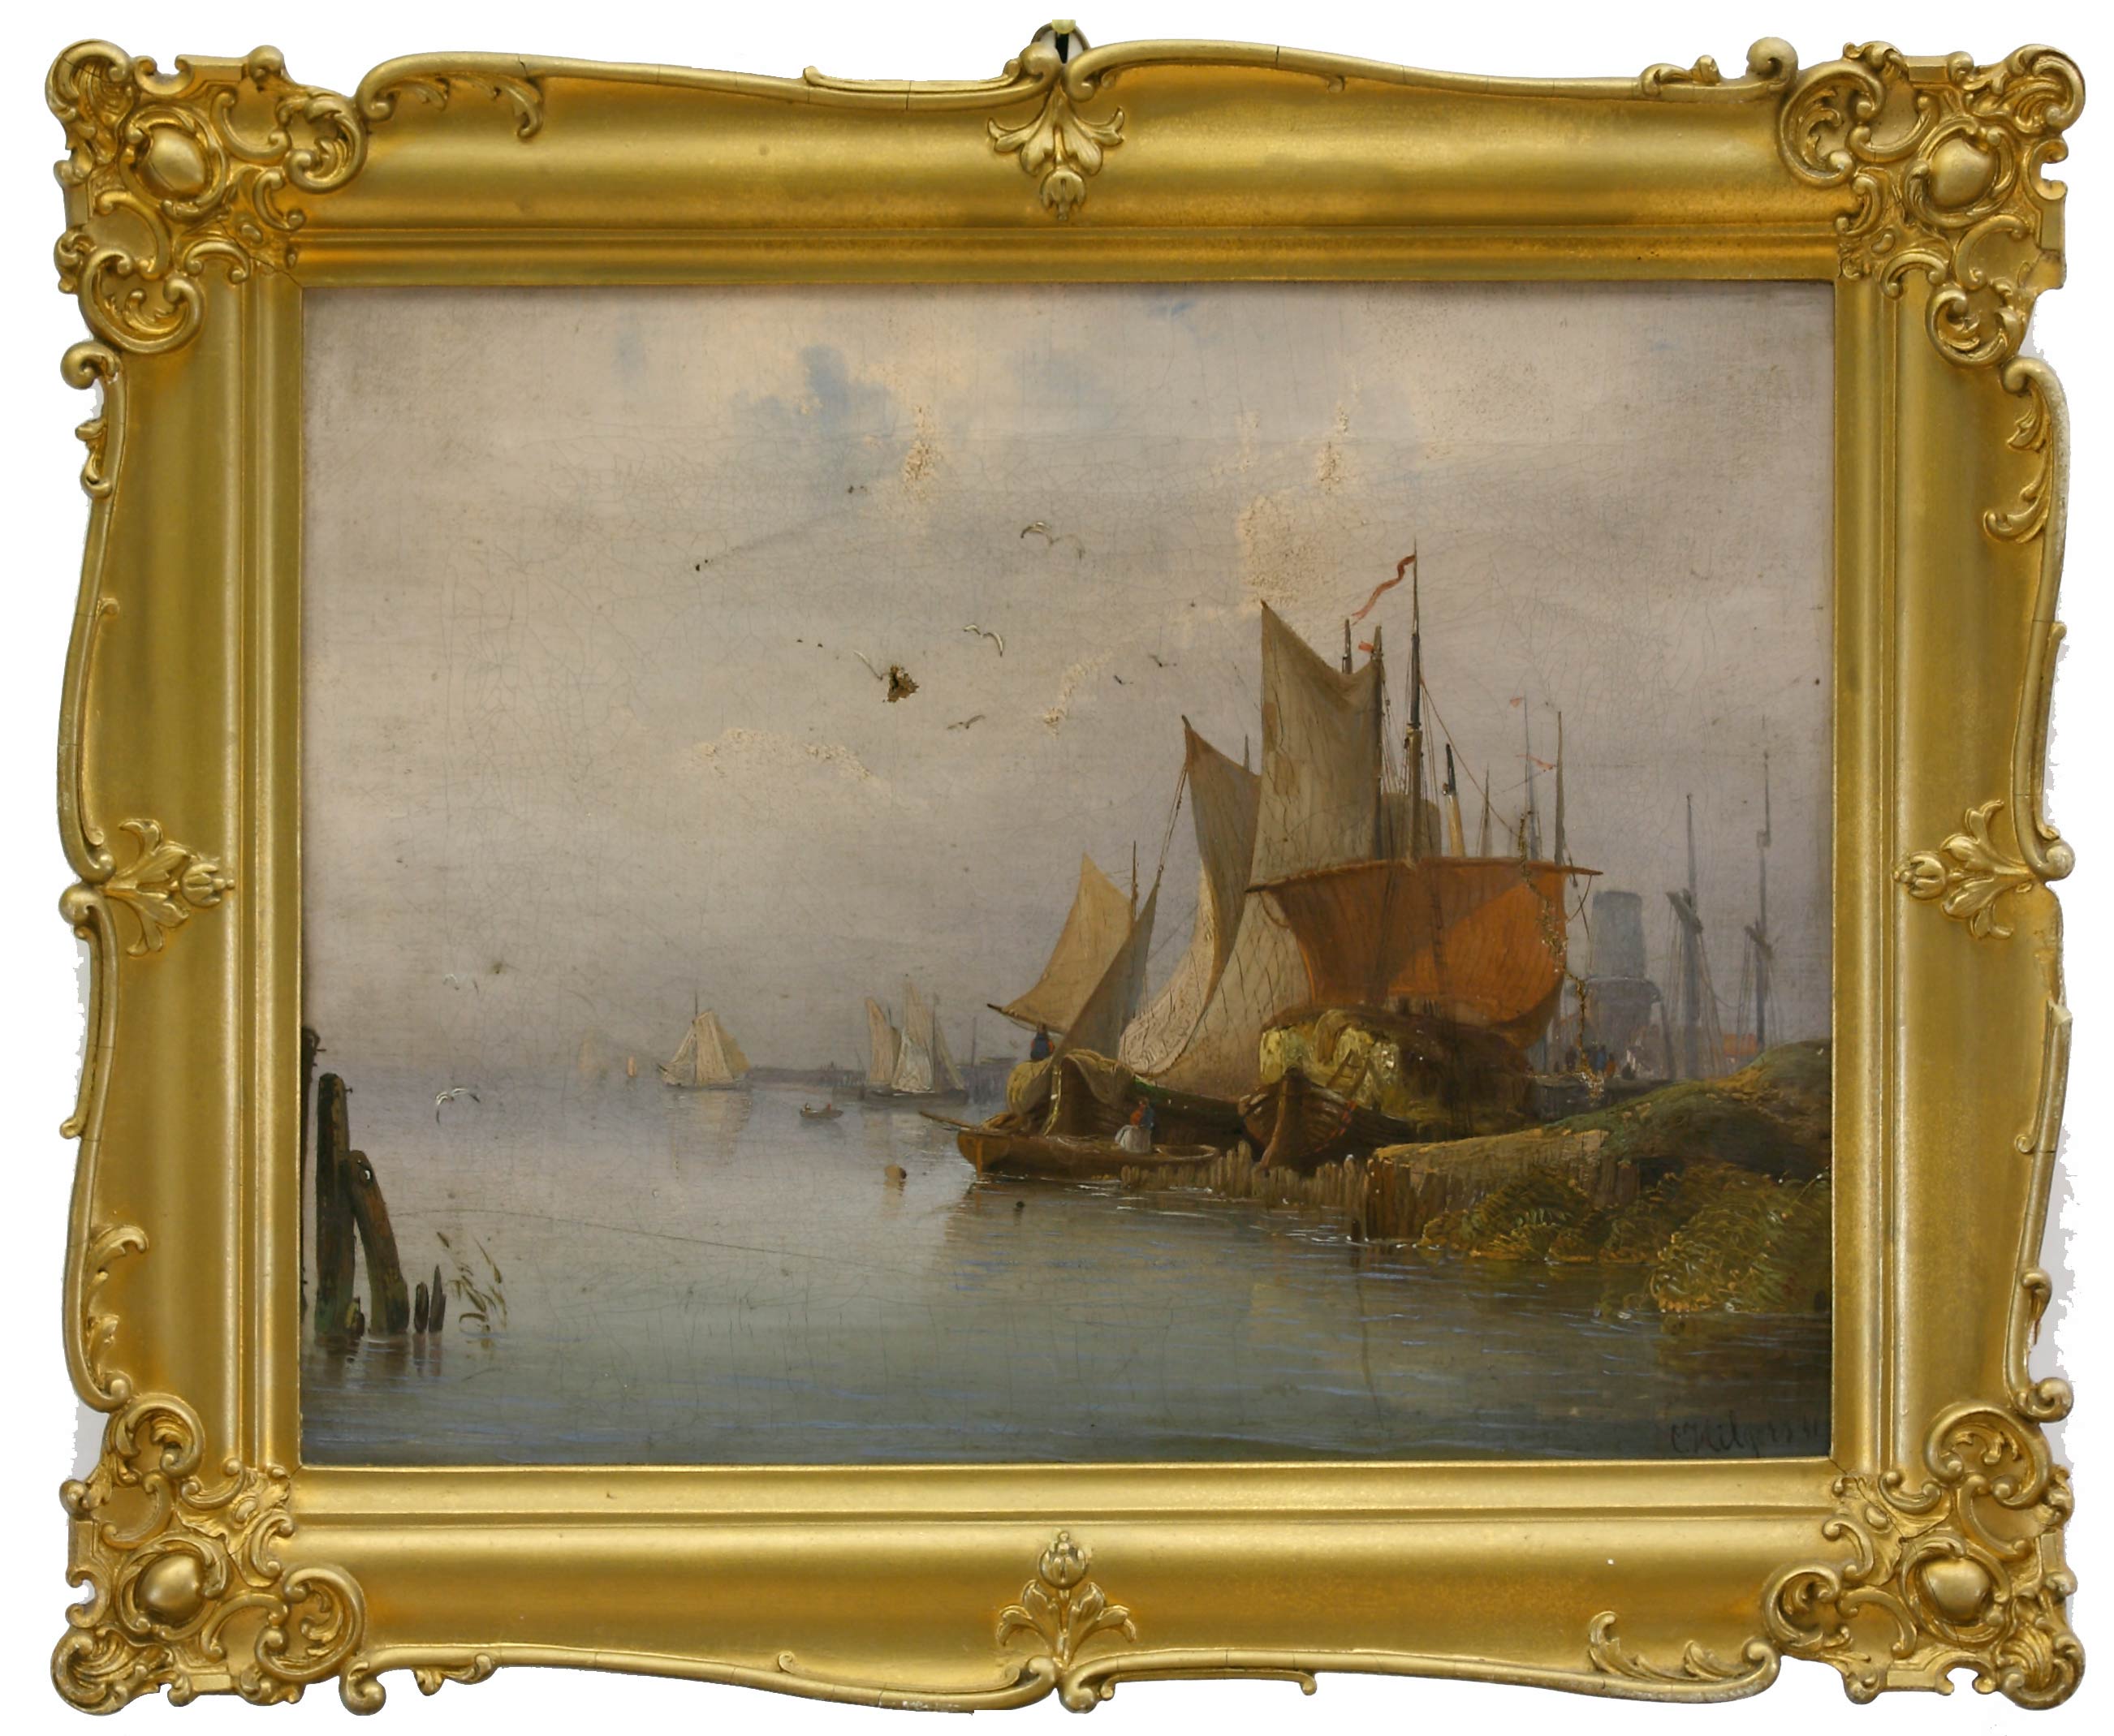 Auktionshaus Quentin Berlin  Gemälde Hilgers  Carl  Anlandende Segelboote. (18)41